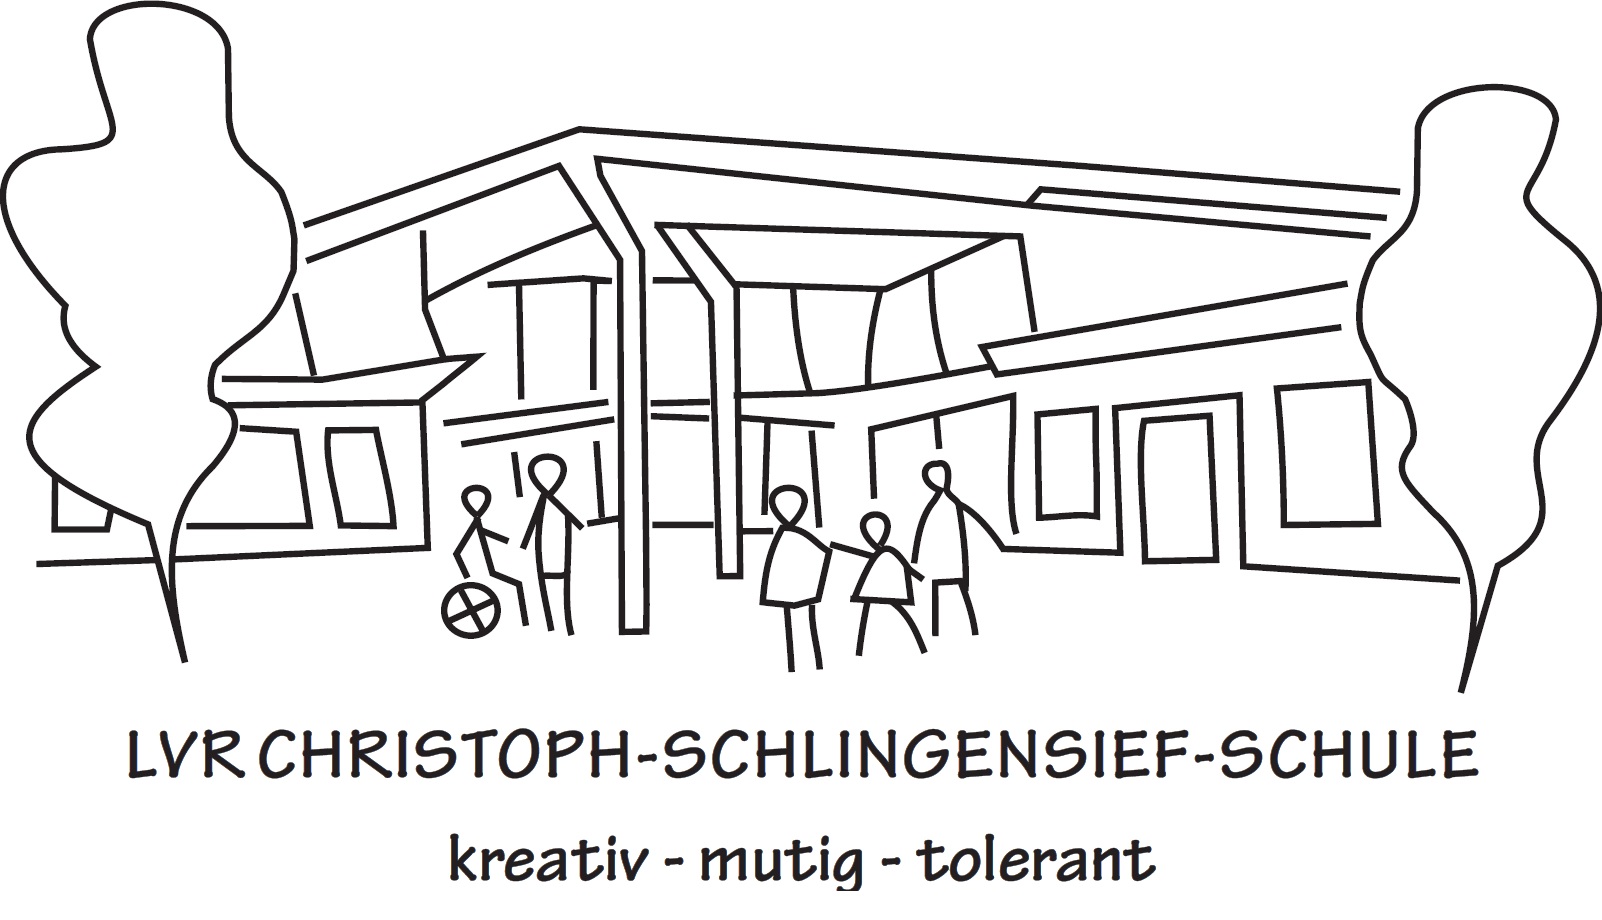 LVR Christoph-Schlingensief-Schule